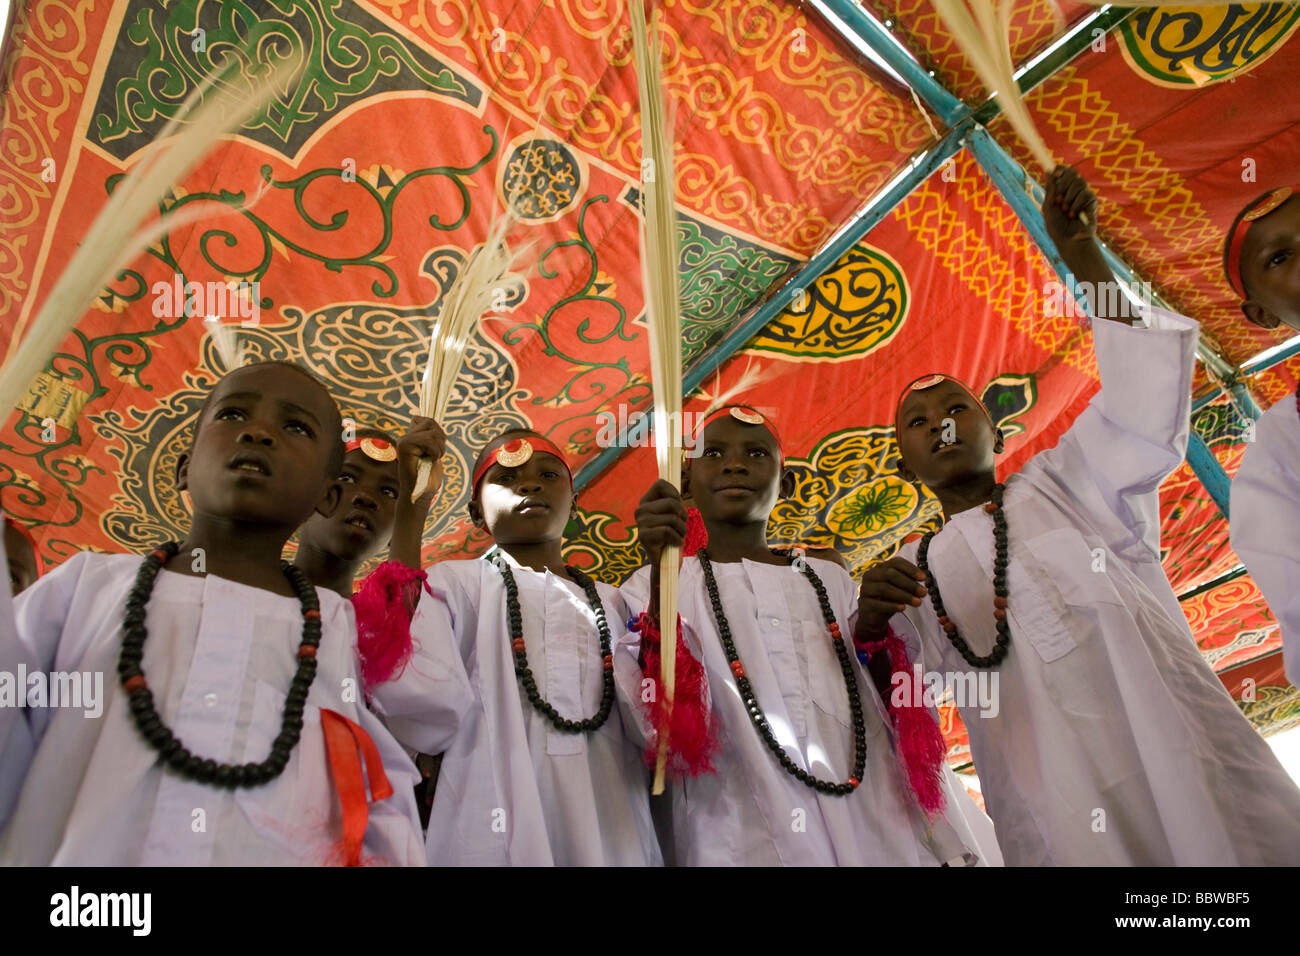 I ragazzi di età compresa tra i 8 e 13 si riuniscono per celebrare un rito sudanese di passaggio, la circoncisione maschile. Foto Stock